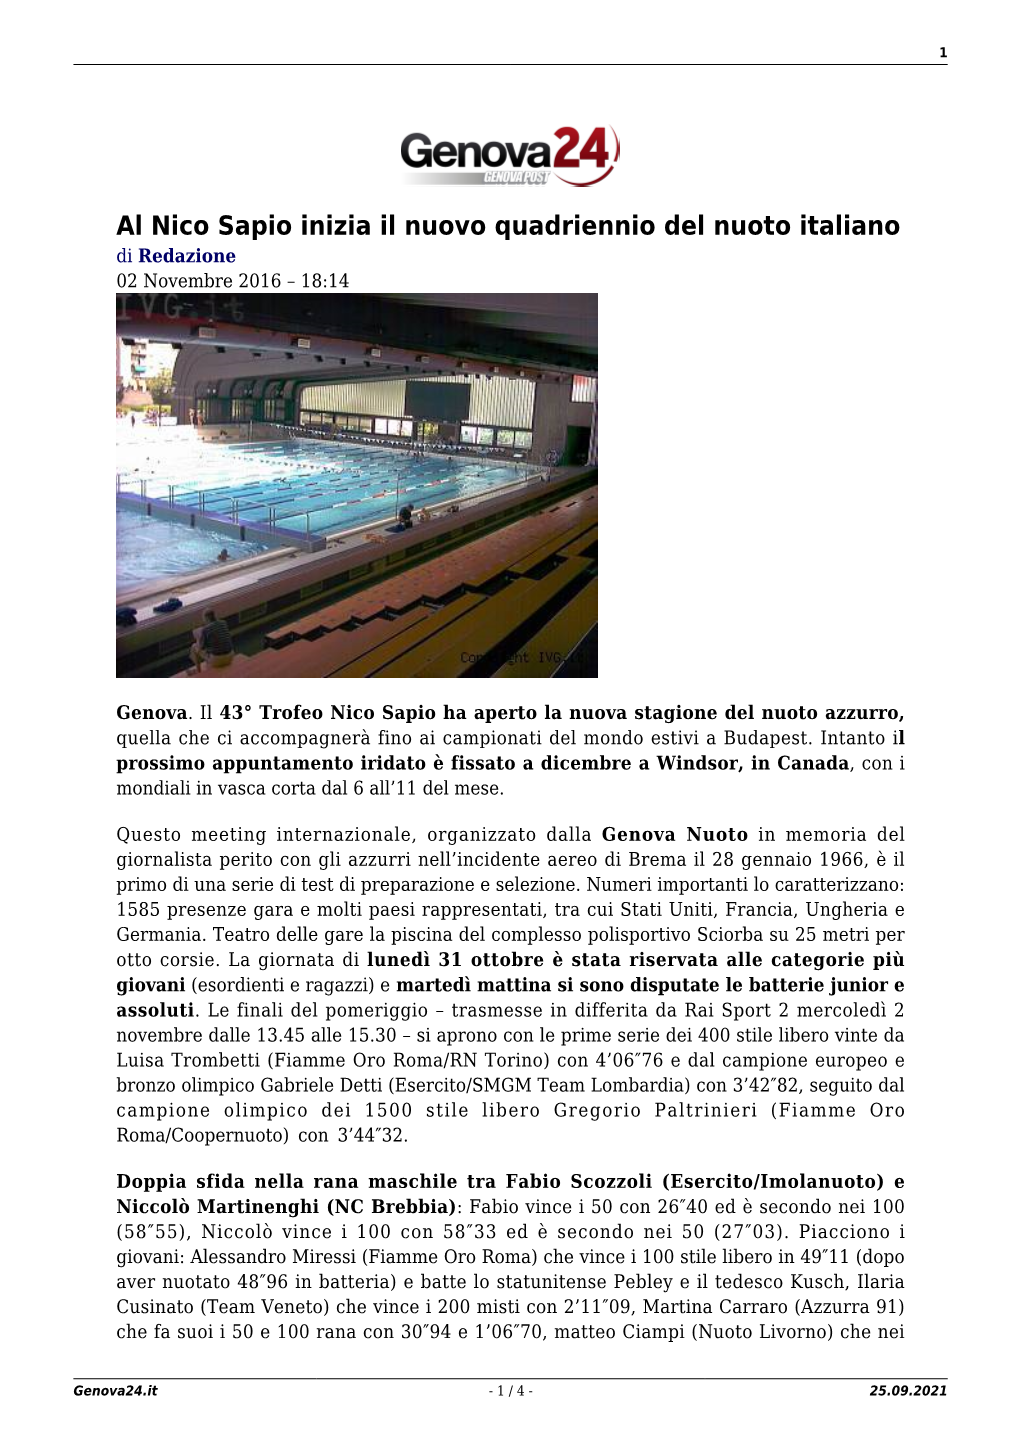 Al Nico Sapio Inizia Il Nuovo Quadriennio Del Nuoto Italiano Di Redazione 02 Novembre 2016 – 18:14